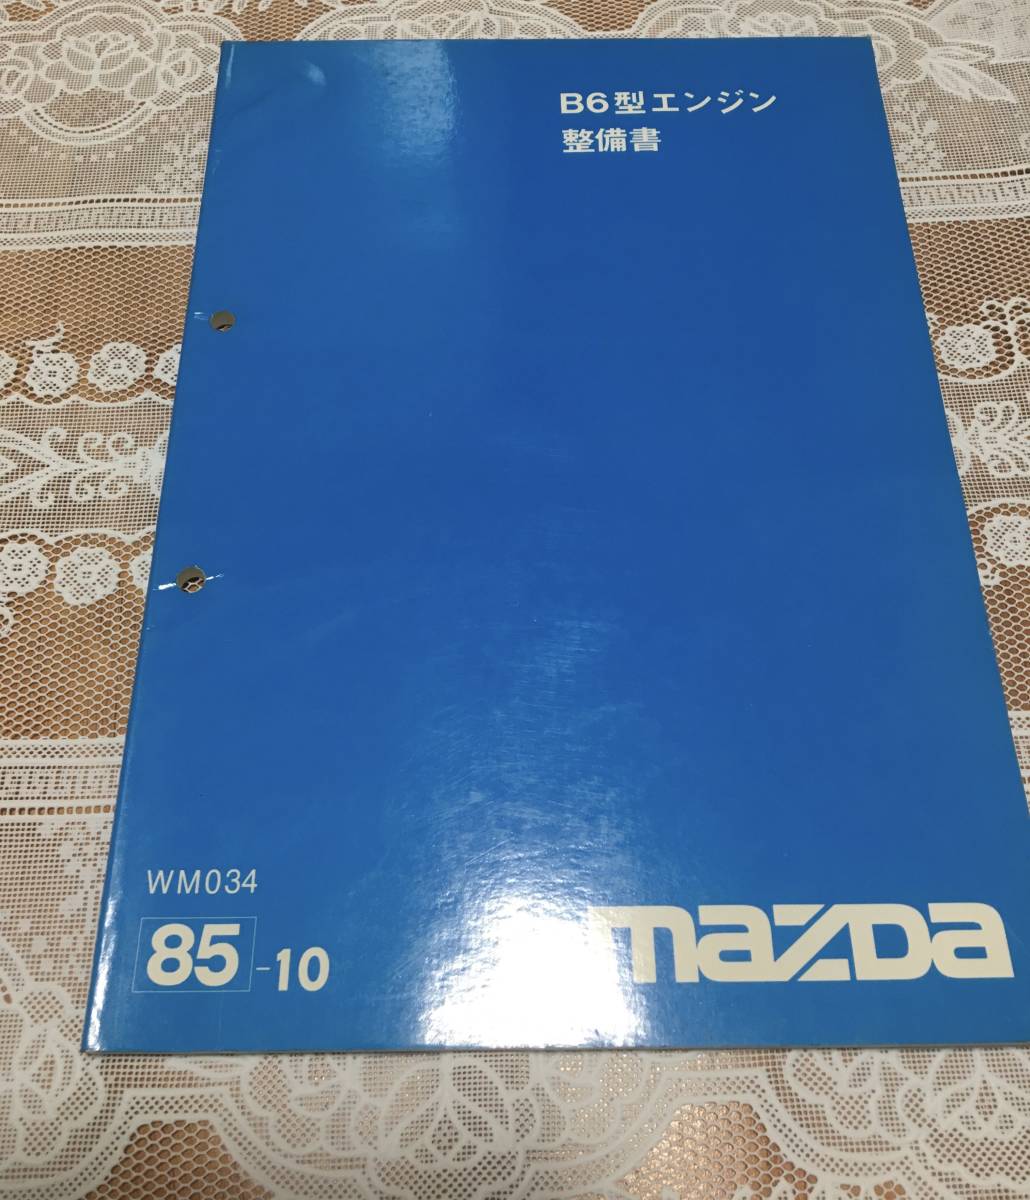 H3935 / MAZDA マツダ 4EE1-T エンジン整備書 1994-9 マツダ - corporate.anokhi.ai